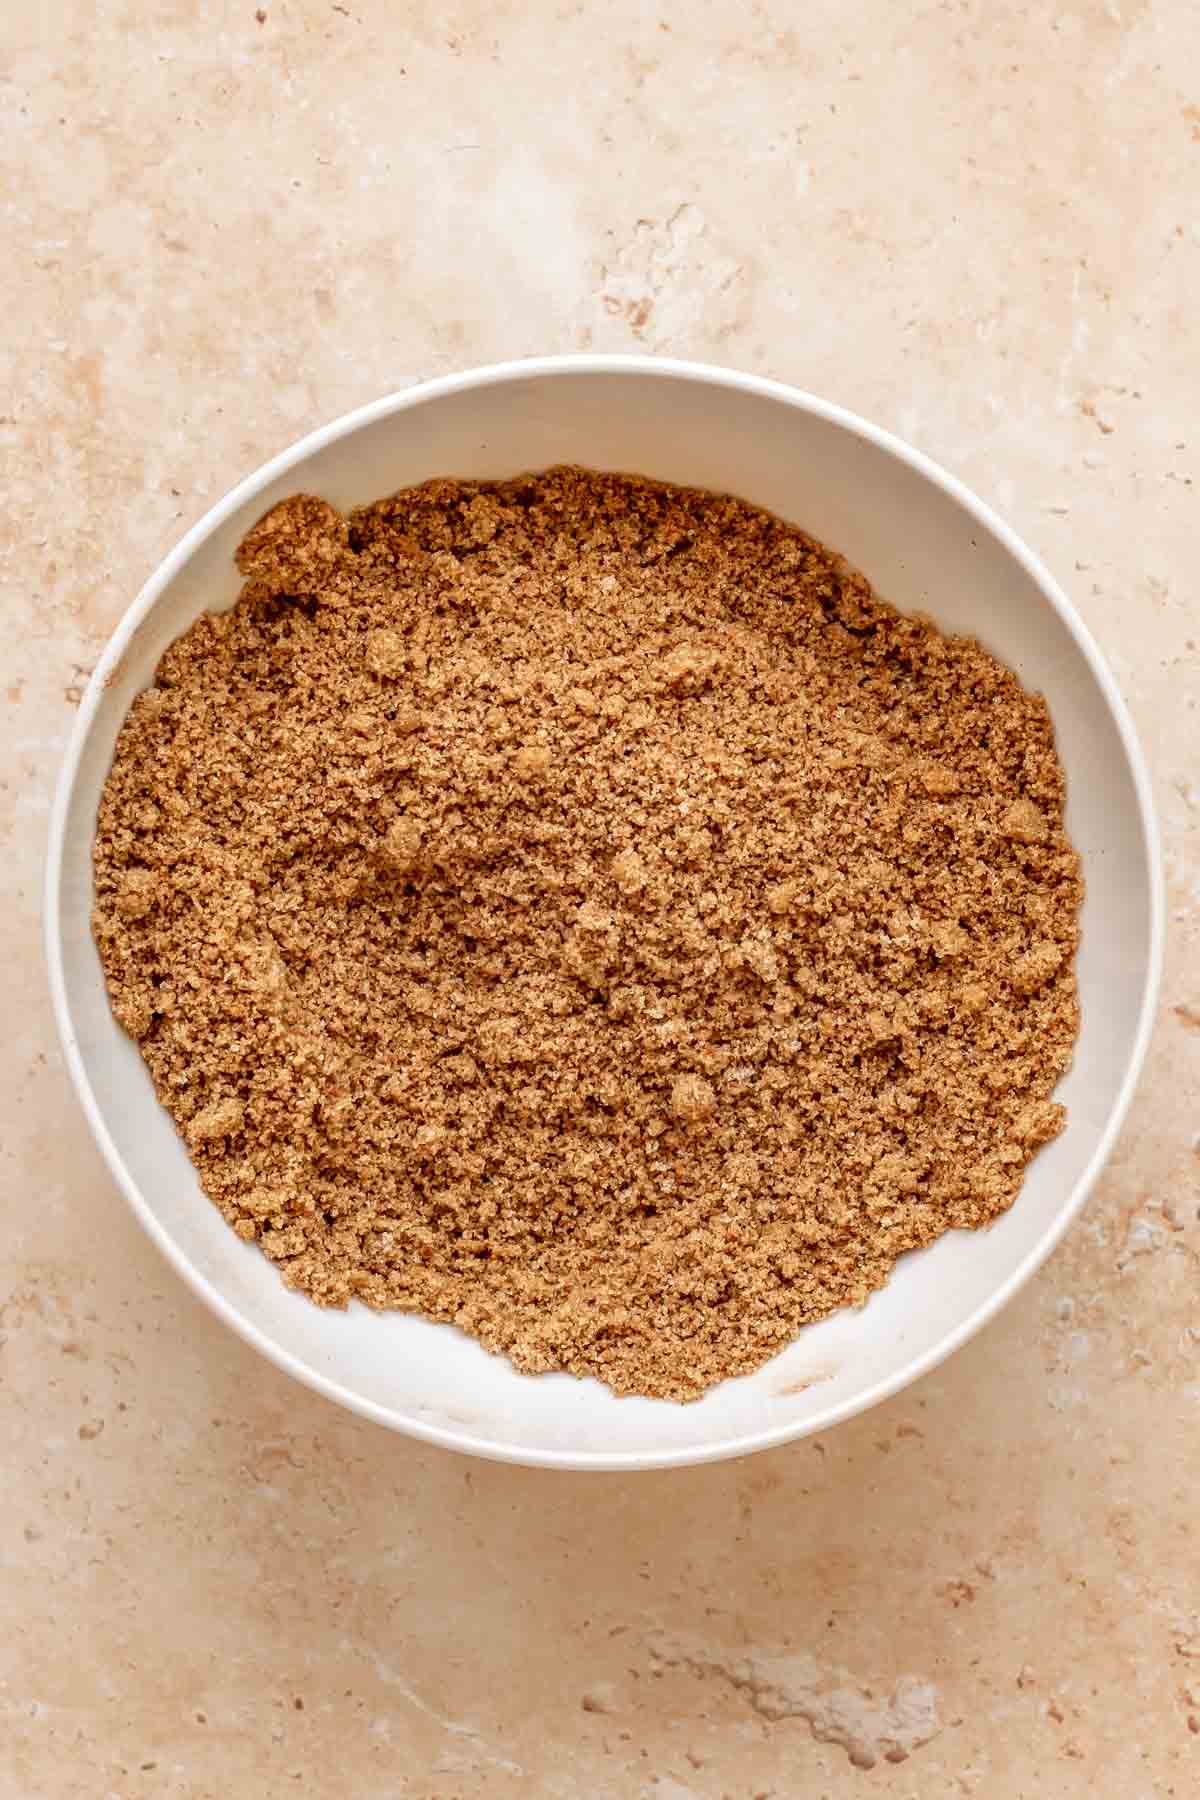 Cinnamon sugar mixed in a bowl.